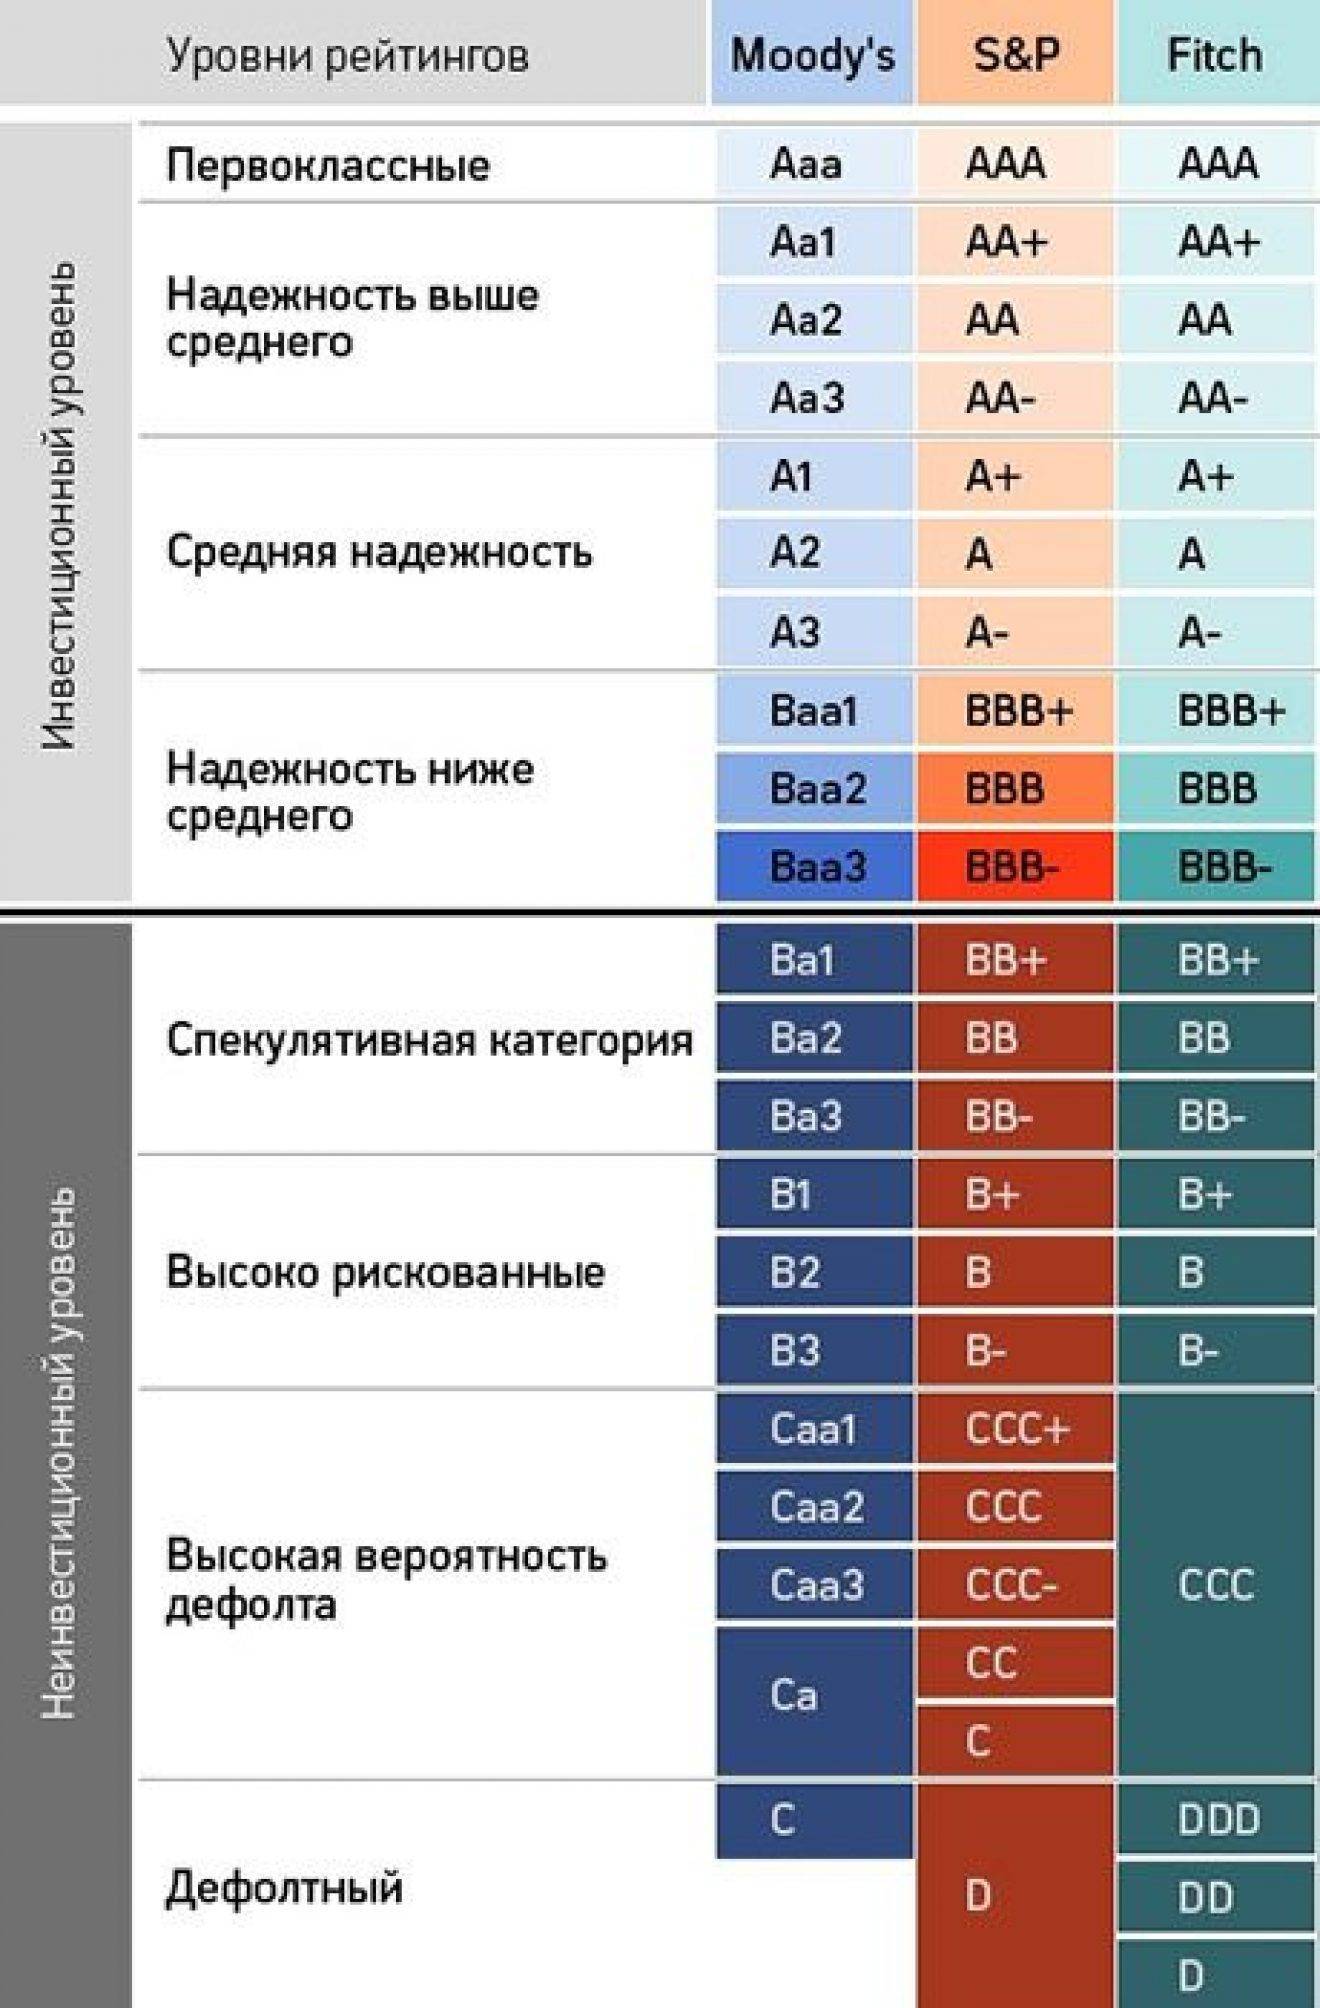 Крупнейшие банки россии в 2021 году: список и критерии формирования рейтинга